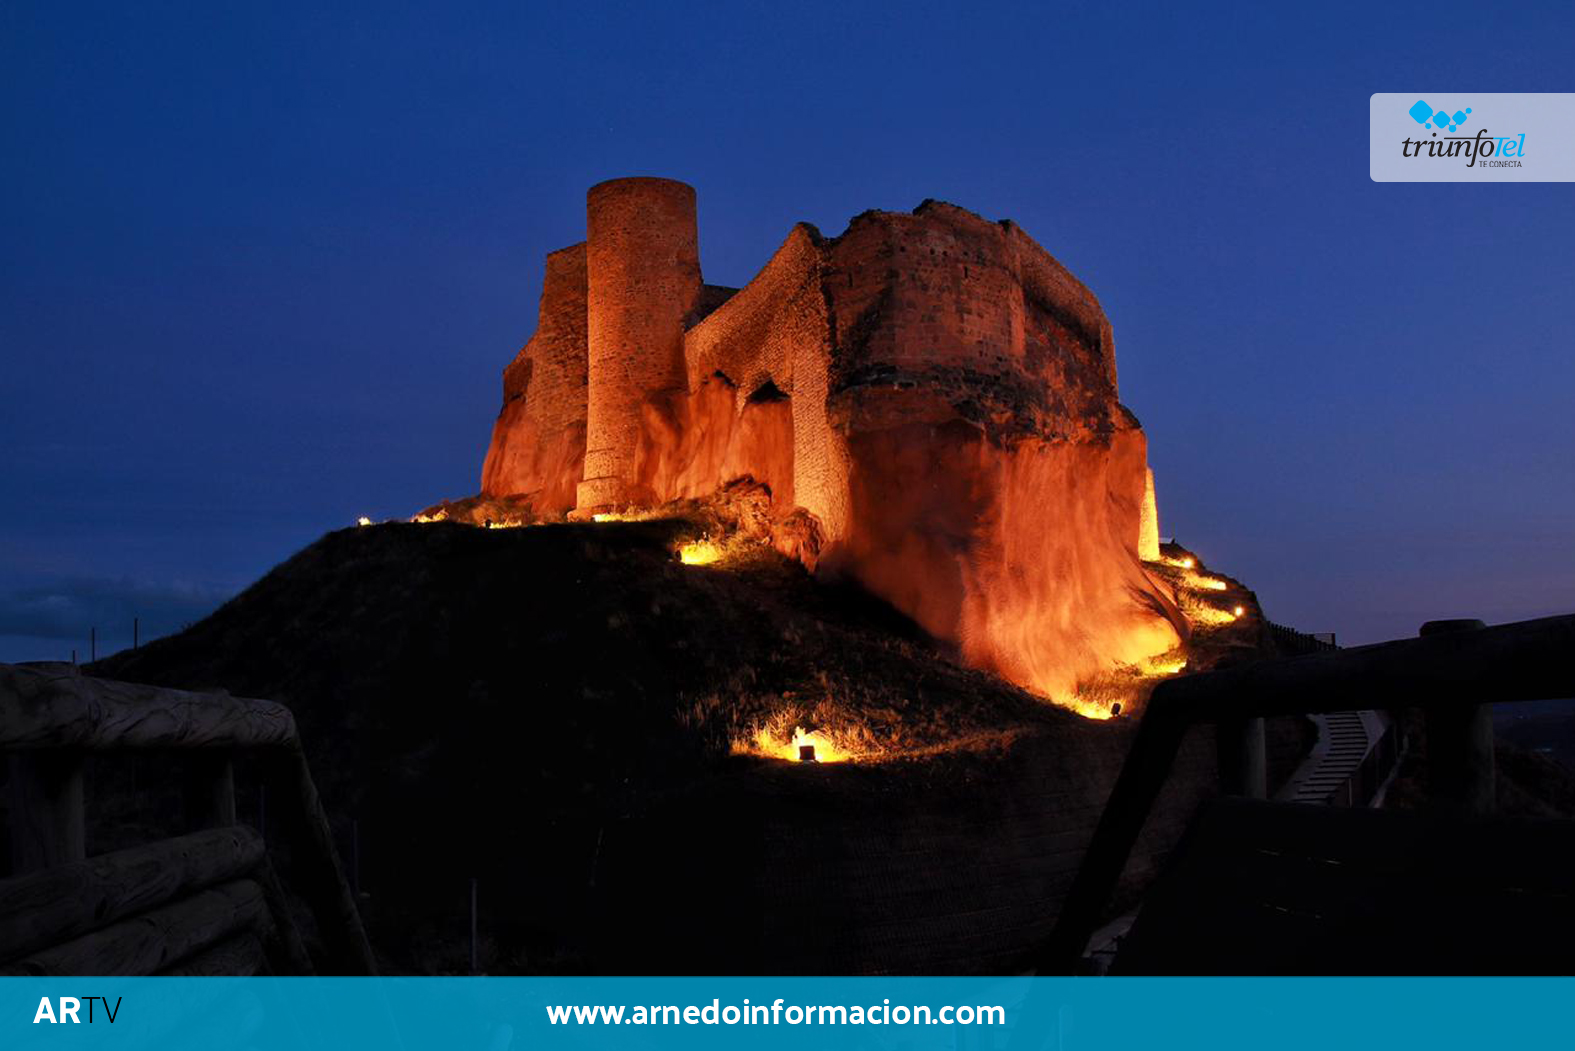 Castillo de Arnedo iluminado